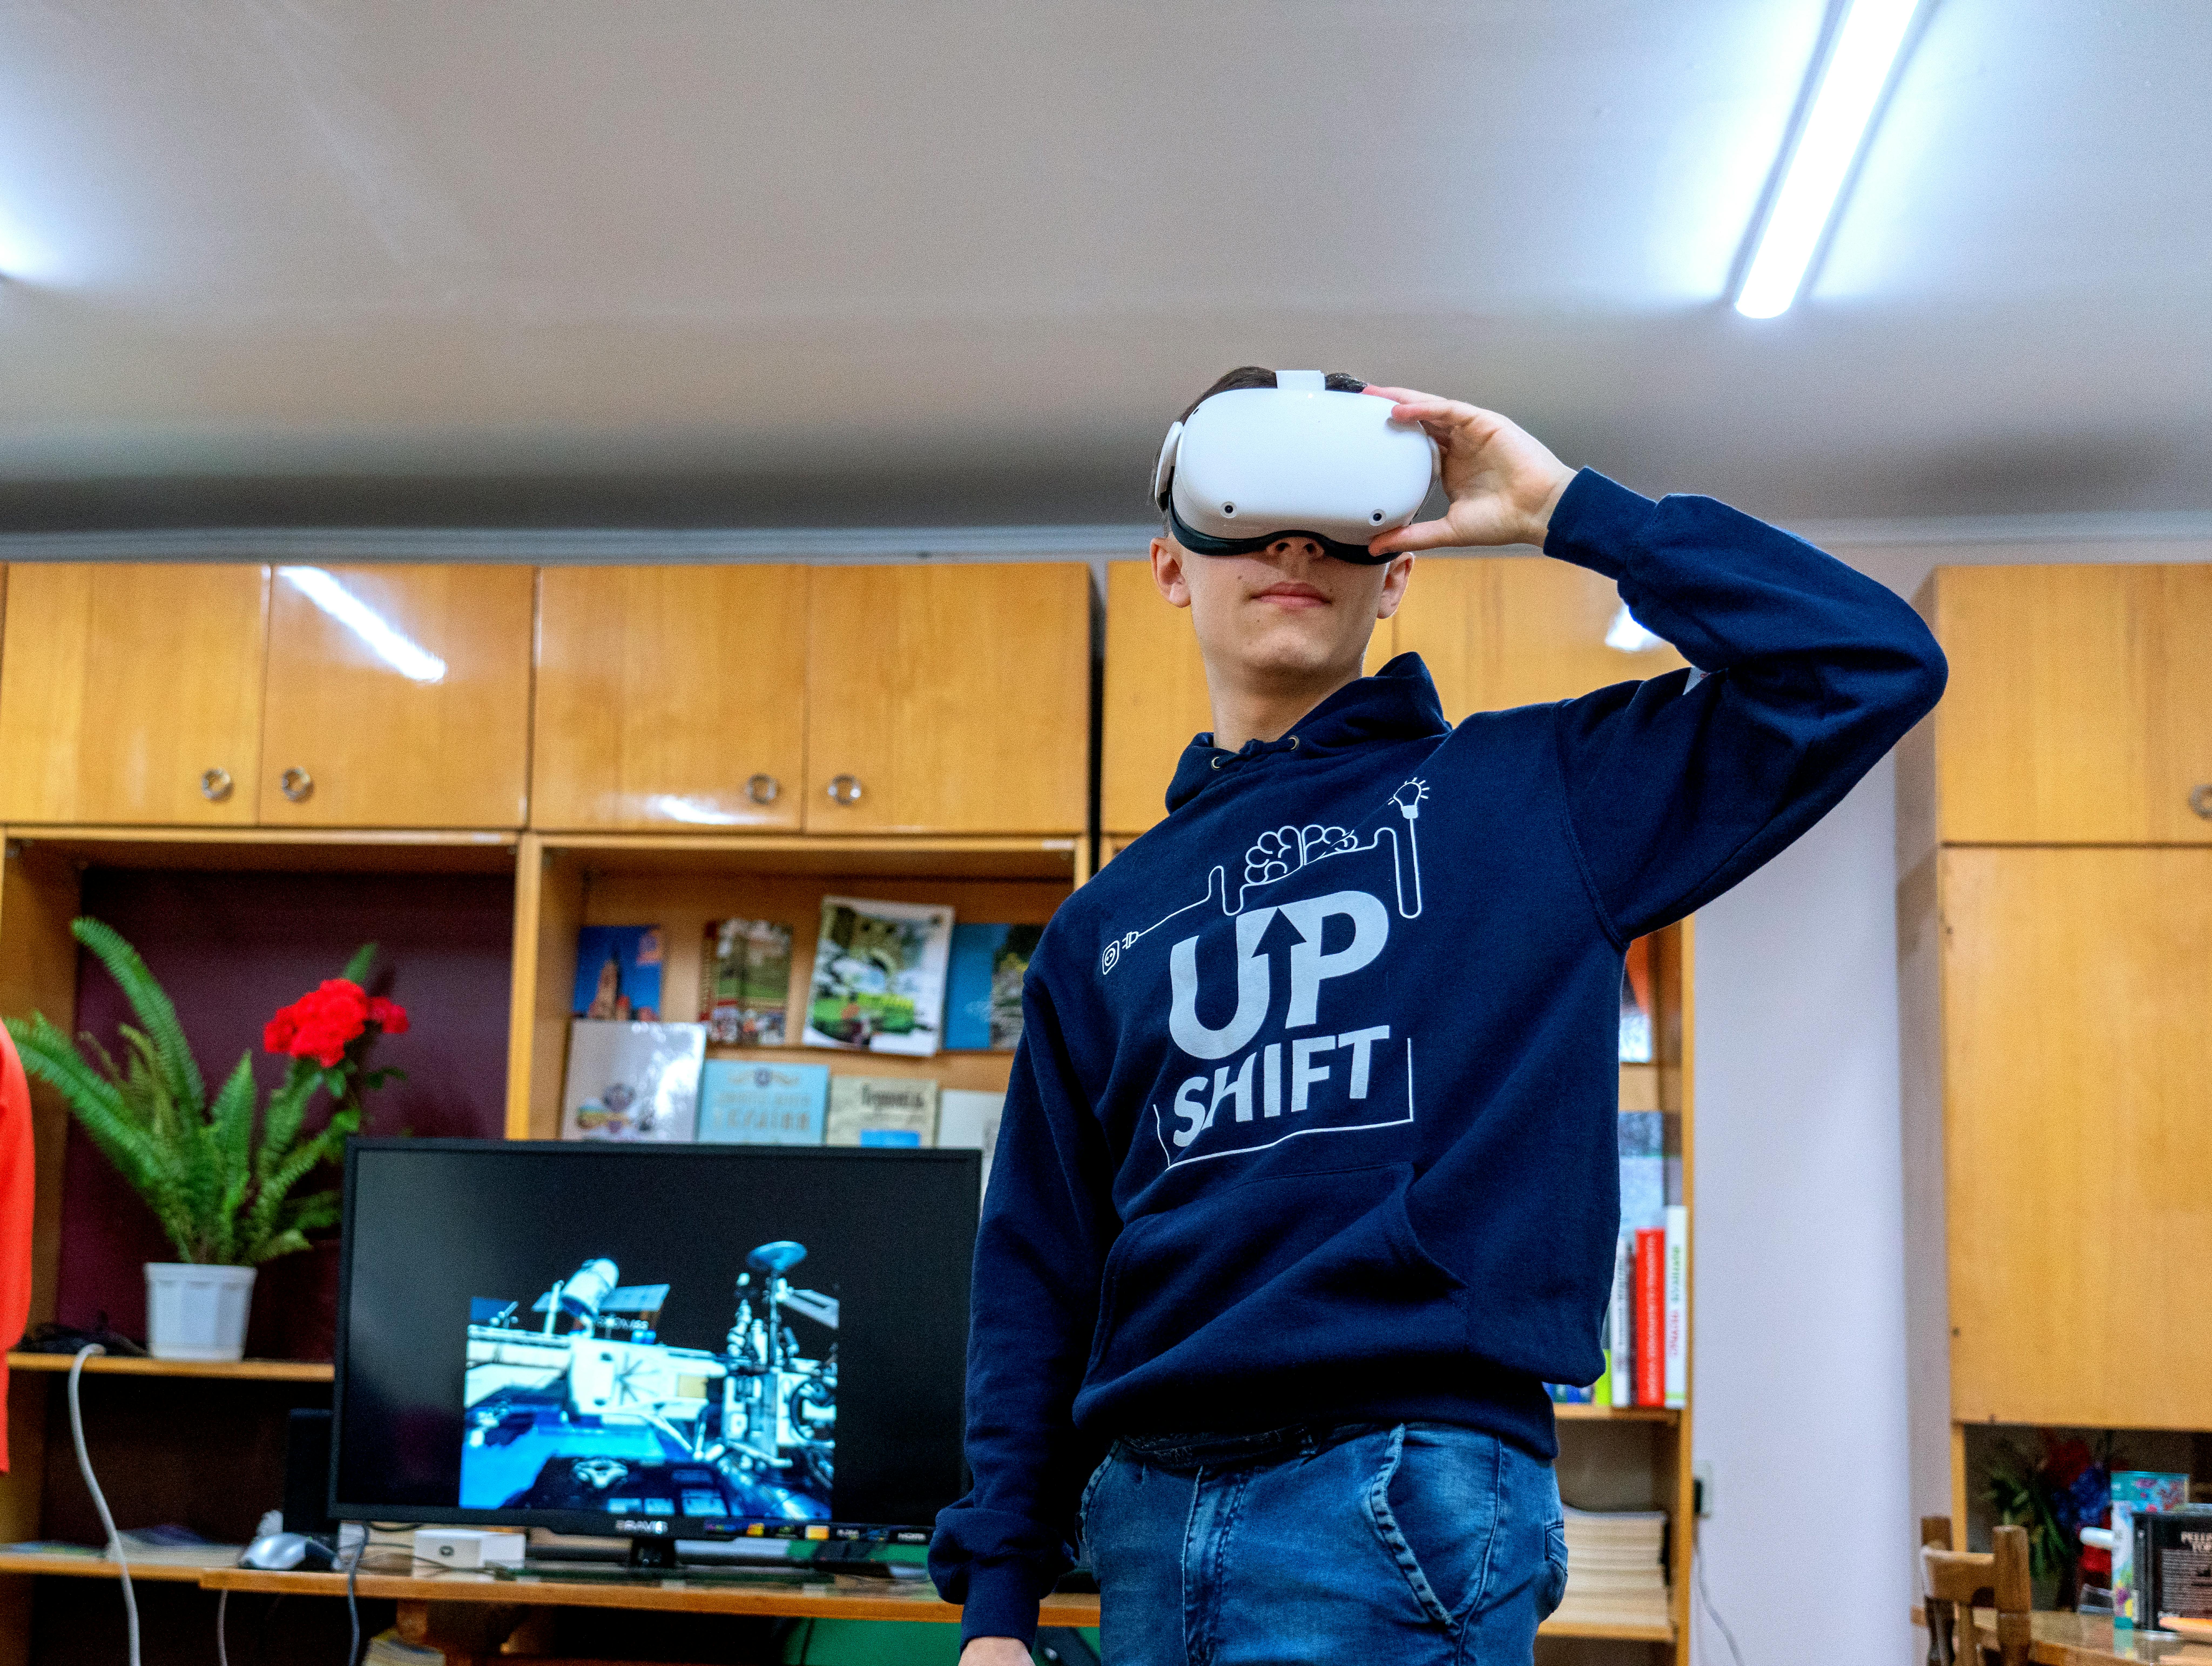 Ucraina: Vitalii, uno studente universitario di 18 anni di Ternopil, indossa occhiali VR. Fa parte di 